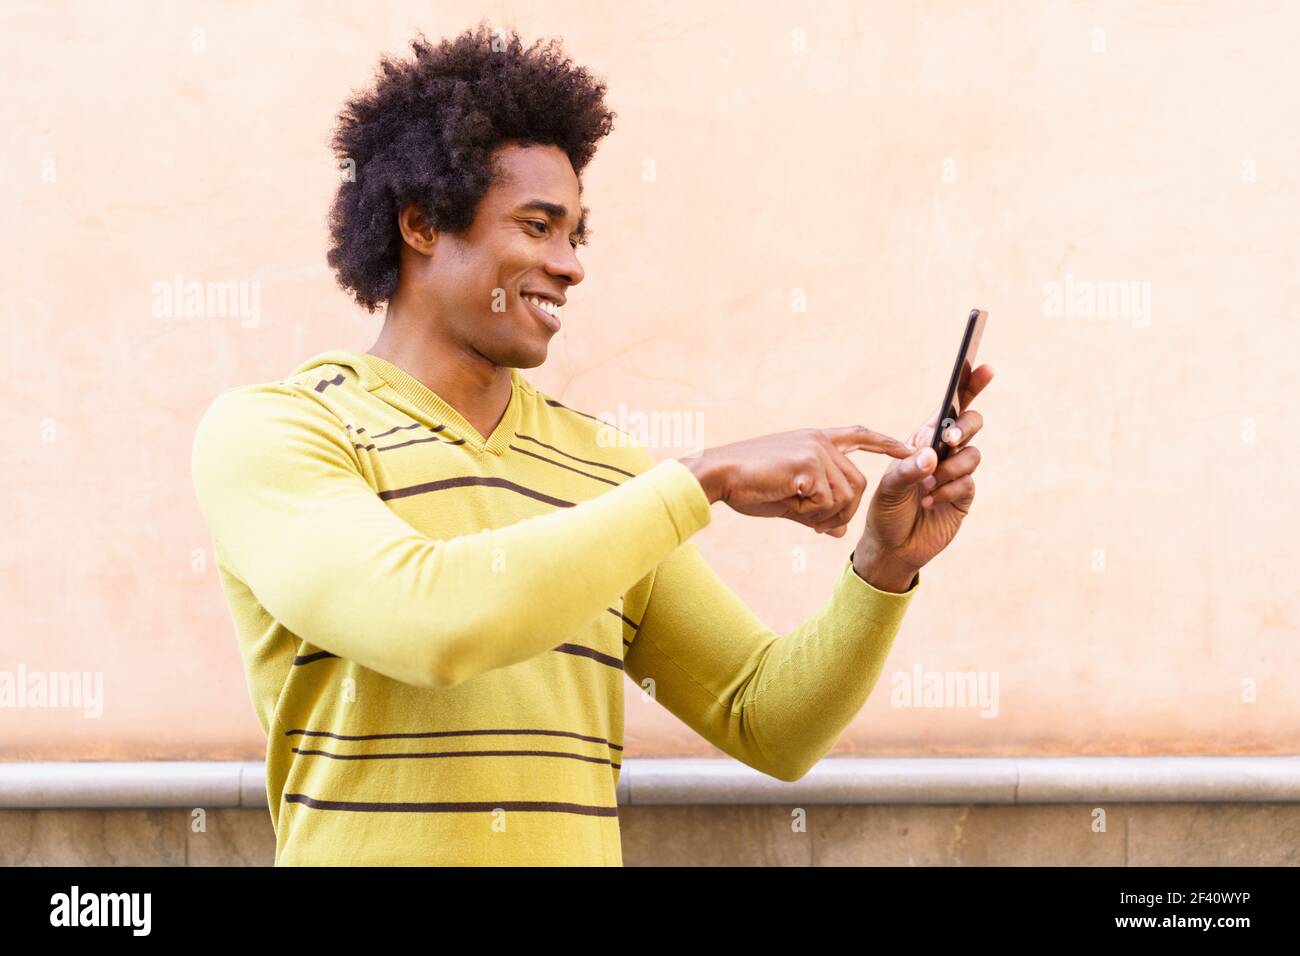 Homme noir avec cheveux afro et casque utilisant un smartphone en milieu urbain. Homme noir avec cheveux afro et casque à l'aide d'un smartphone. Banque D'Images